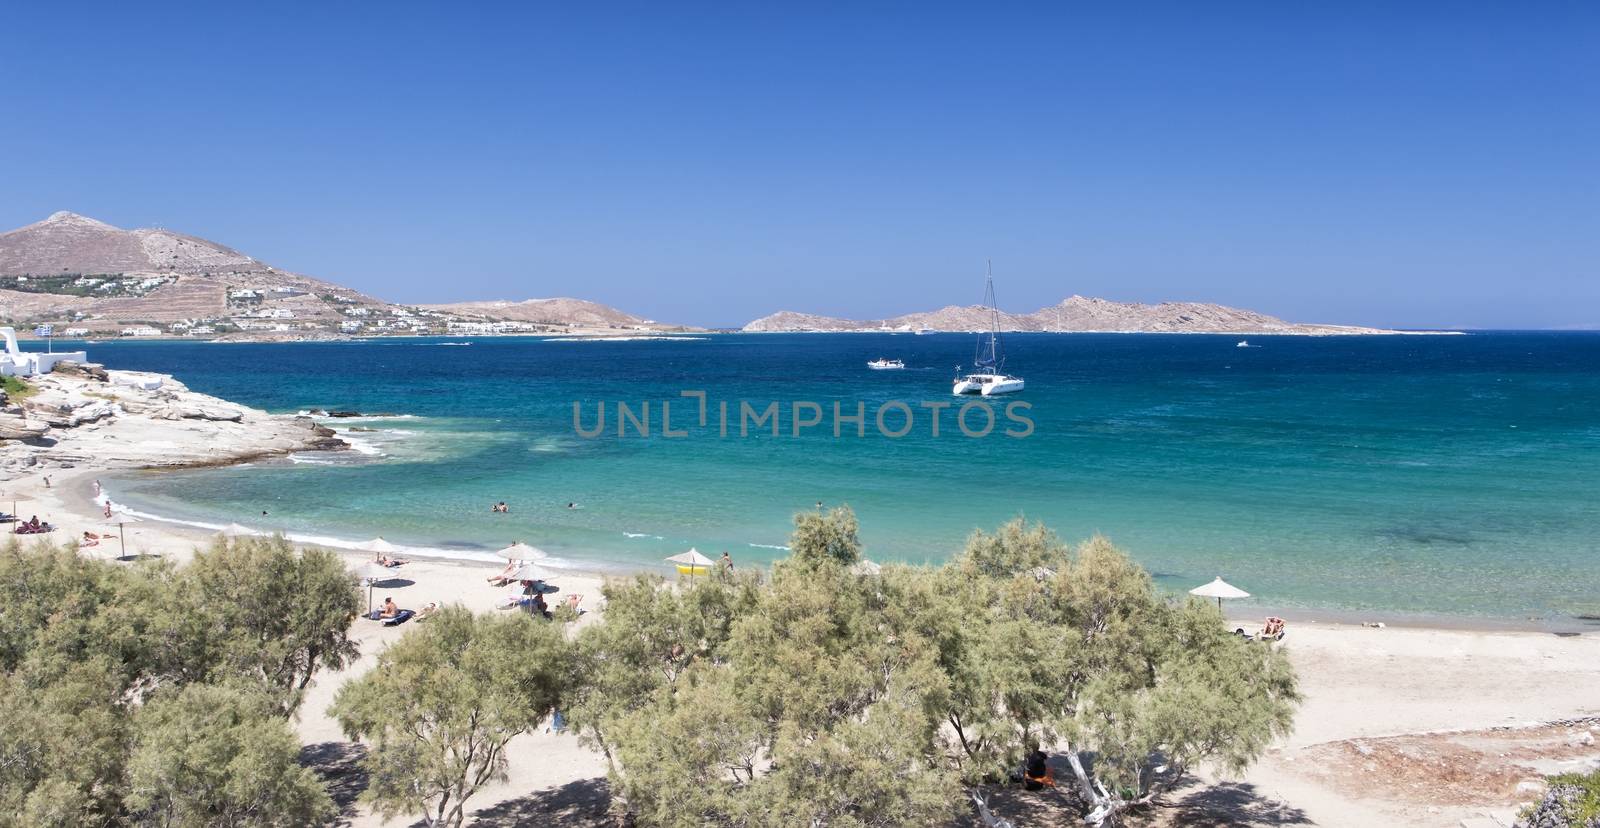 The Kolimbithres beach, Paros. by mitakag